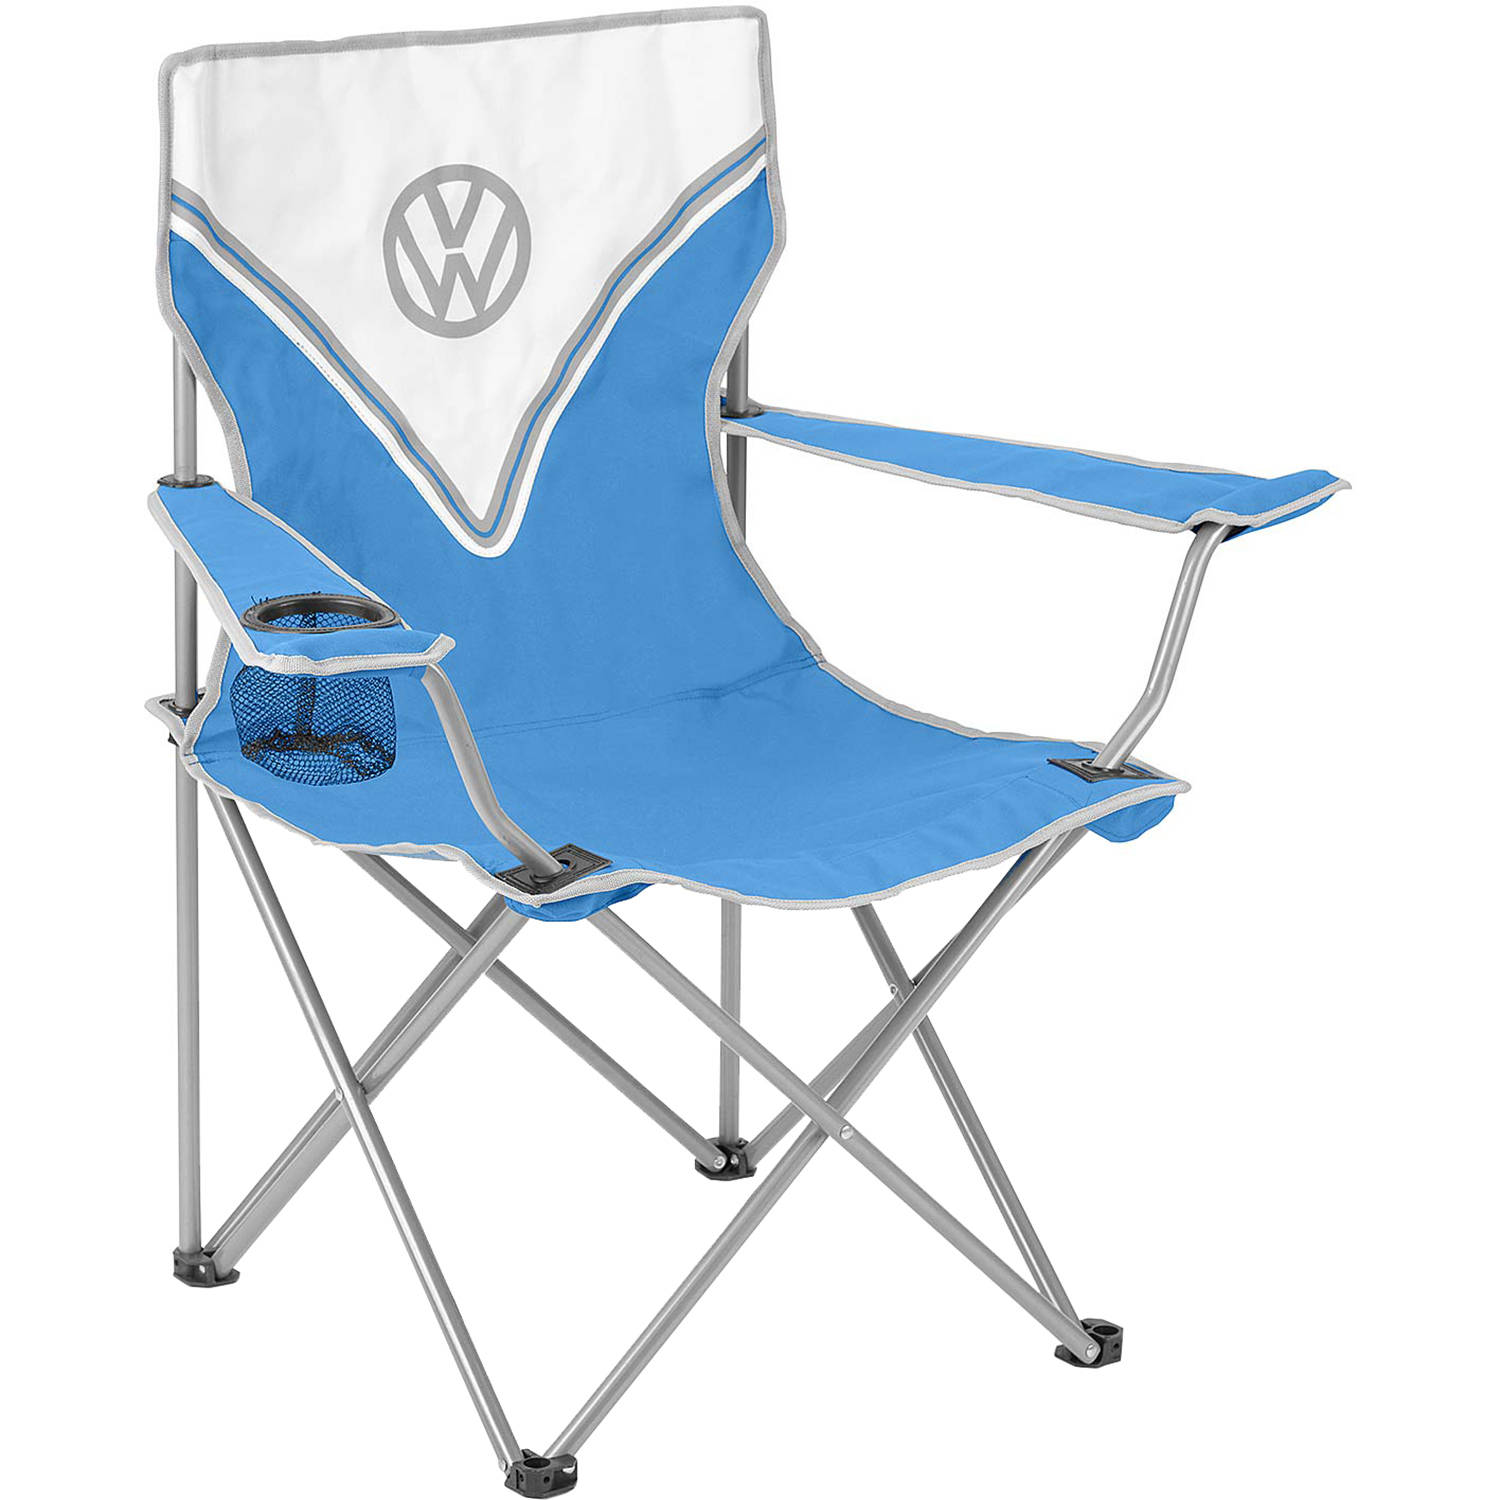 Volkswagen campingstoel blauw